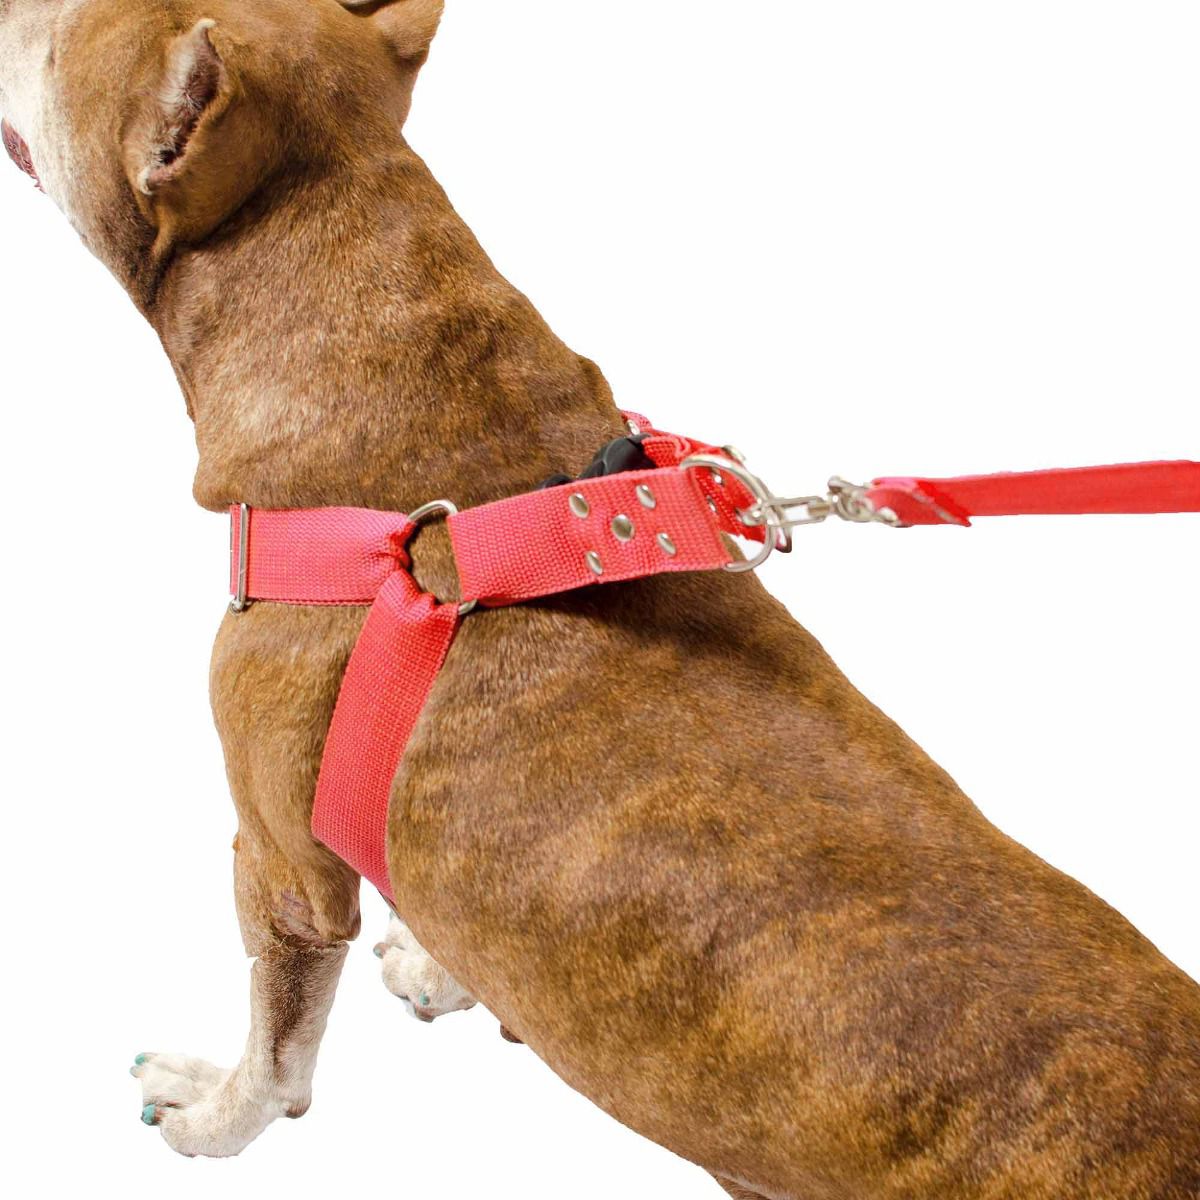 Kit 2x Coleira Peitoral Cachorro Porte Maior Guia Adaptador Cinto Segurança Tamanho M - Cores Preta + Vermelha